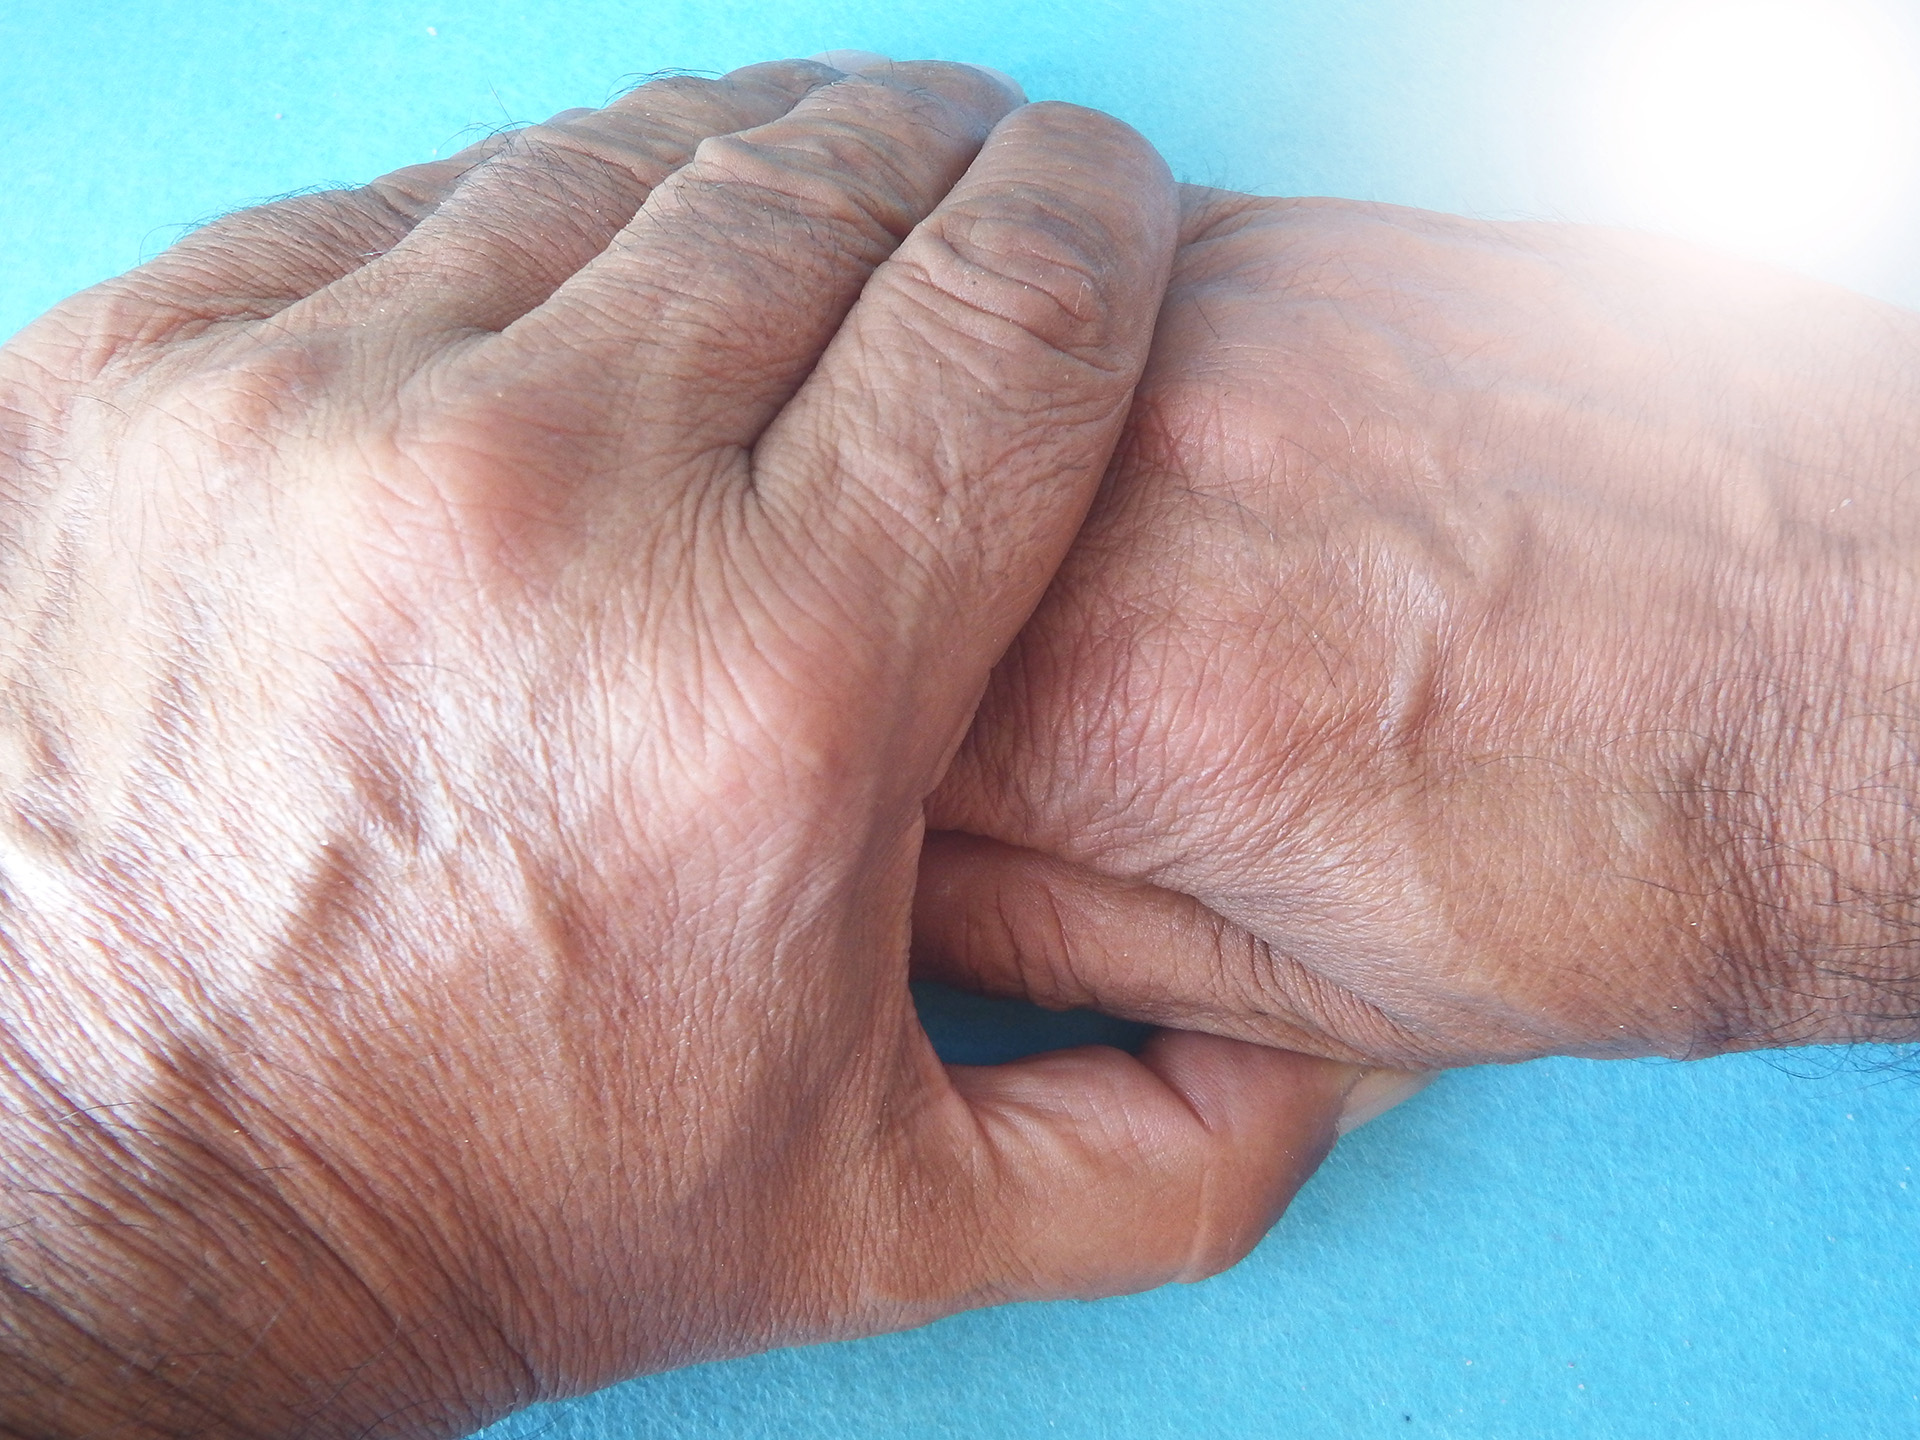 Los síntomas de la Enfermedad de Parkinson incluyen aquellos que afectan el movimiento: temblor, rigidez muscular y lentitud
(Getty Images)